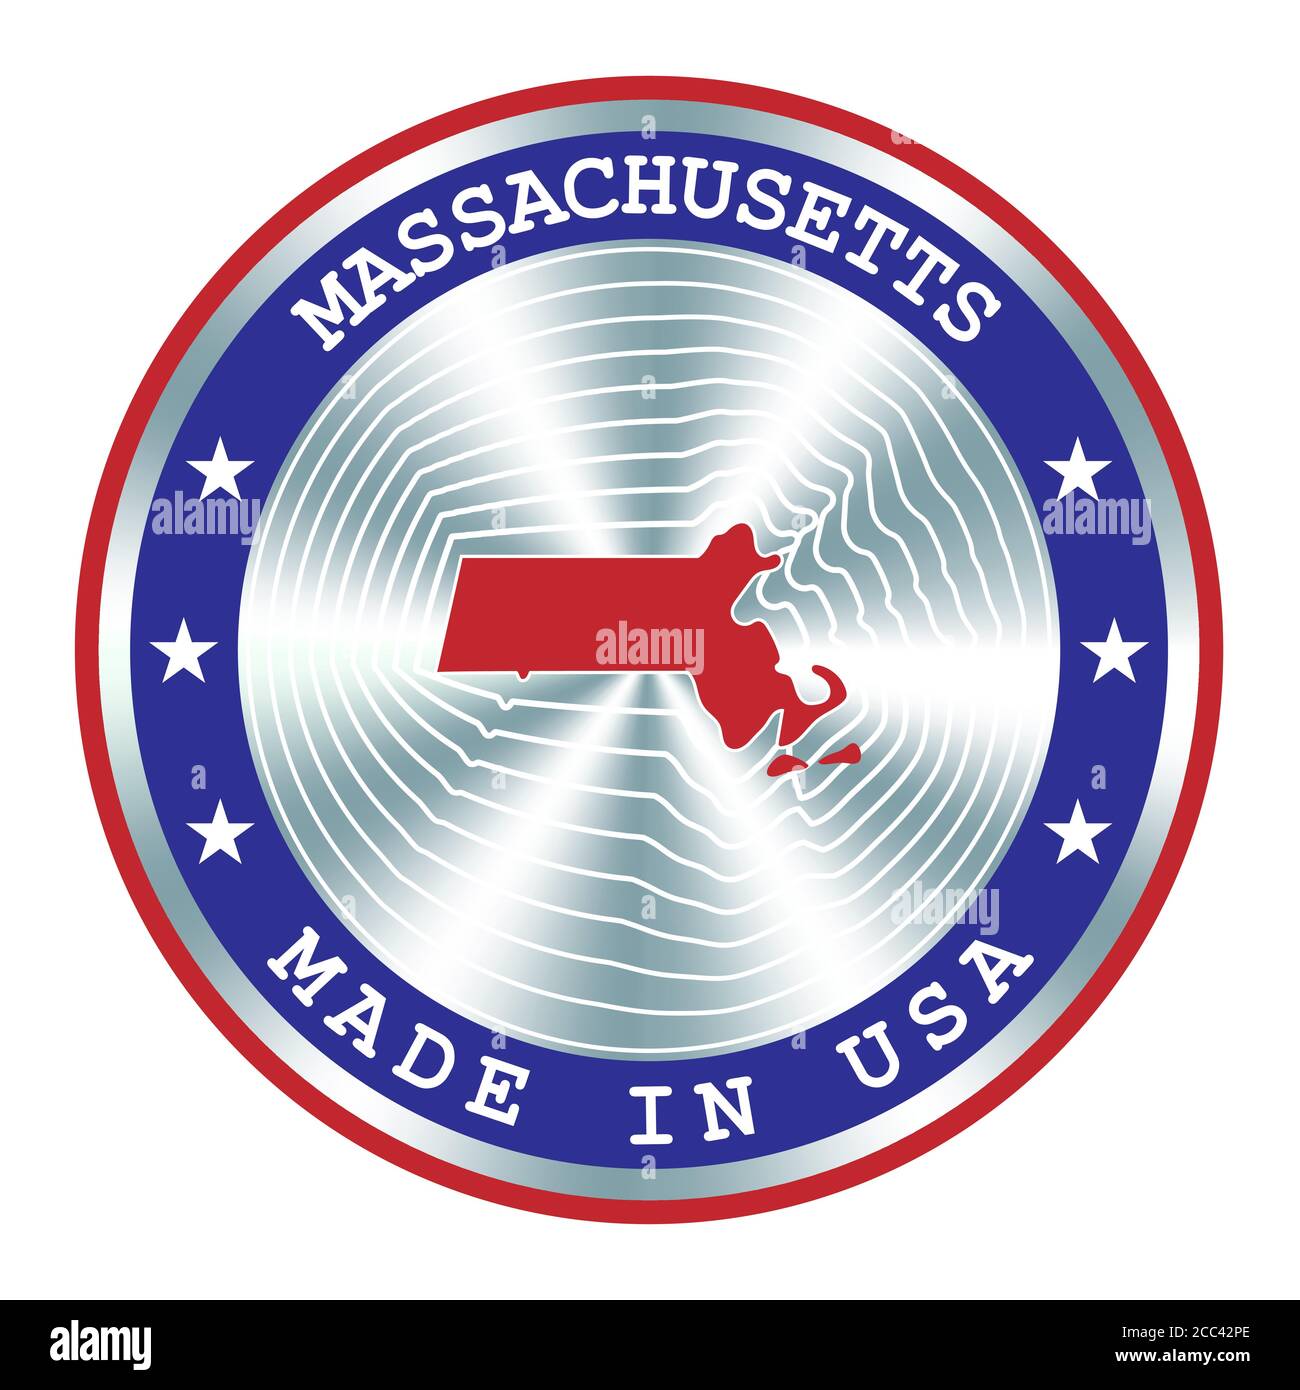 Fabriqué dans le Massachusetts signe de production local, autocollant, sceau, timbre. Enseigne hologramme ronde pour la conception d'étiquettes et le marketing national aux États-Unis Illustration de Vecteur